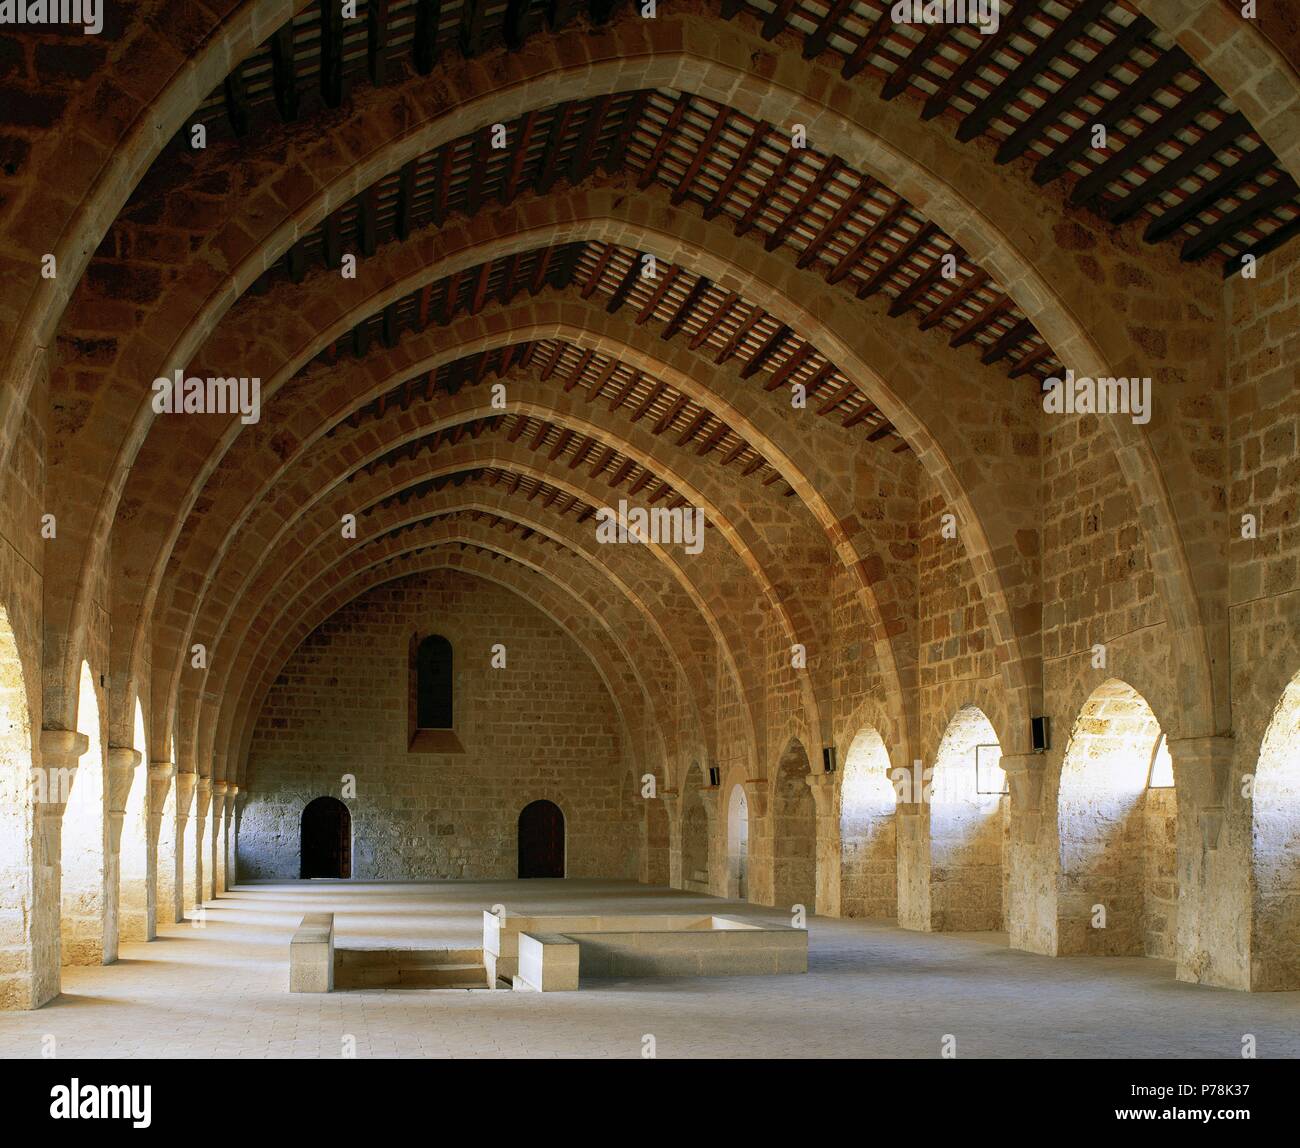 Monastère de Santa Maria de Santes Creus. Abbaye cistercienne. Dortoir, 1191. Arcades ogivales. La Catalogne. L'Espagne. Banque D'Images